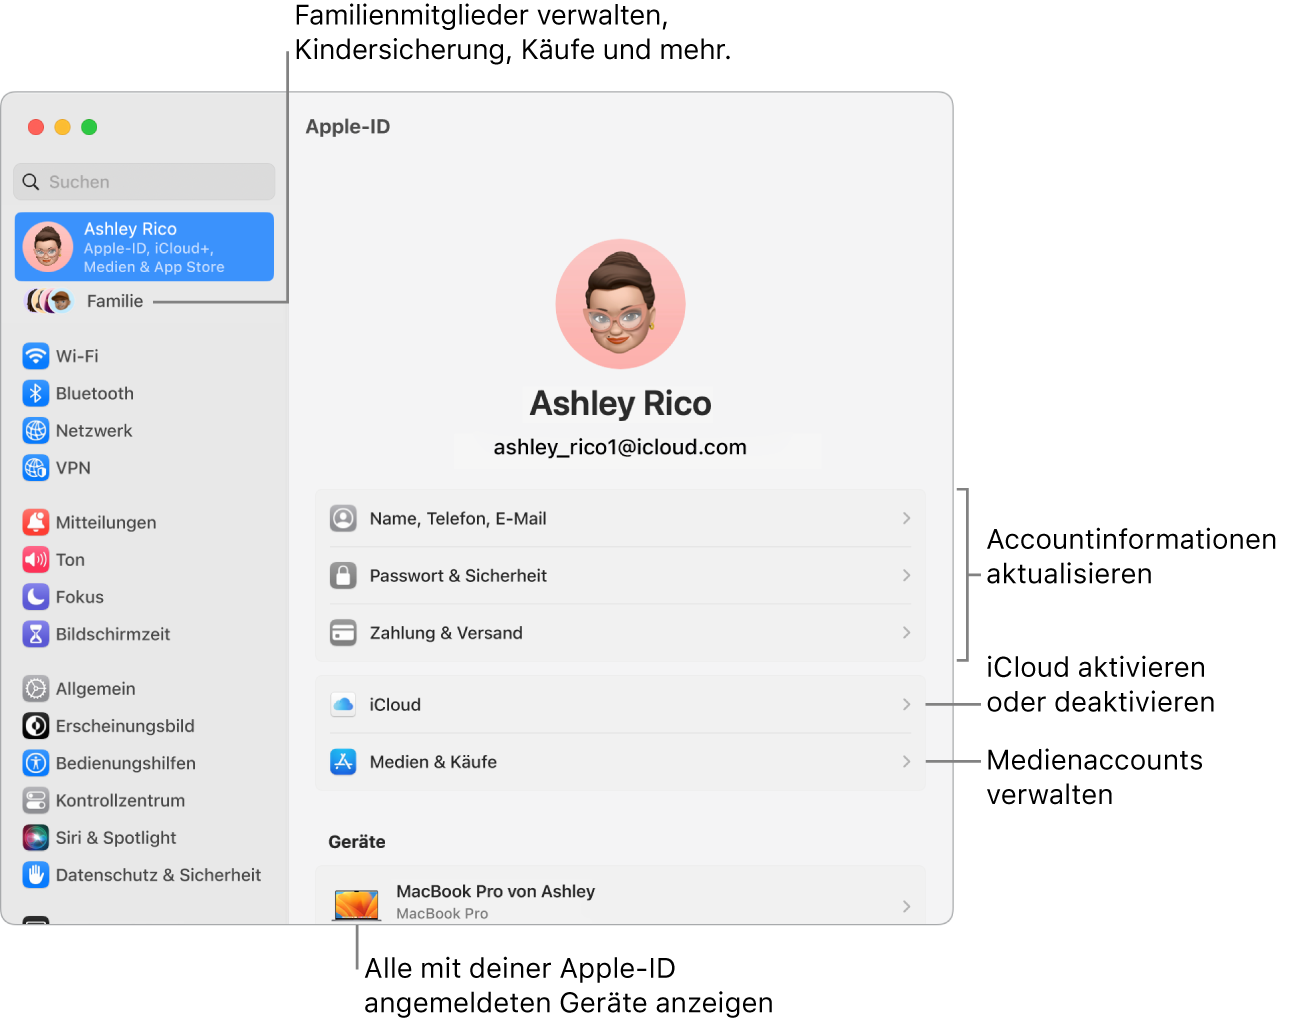 Apple-ID-Einstellungen in den Systemeinstellungen mit Beschriftungen zum Aktualisieren der Accountinformationen, Ein- bzw. Ausschalten von iCloud-Funktionen, Verwalten von Medienaccounts und für die Funktion „Familie“, um Familienmitglieder, Kindersicherung, Käufe und mehr zu verwalten.